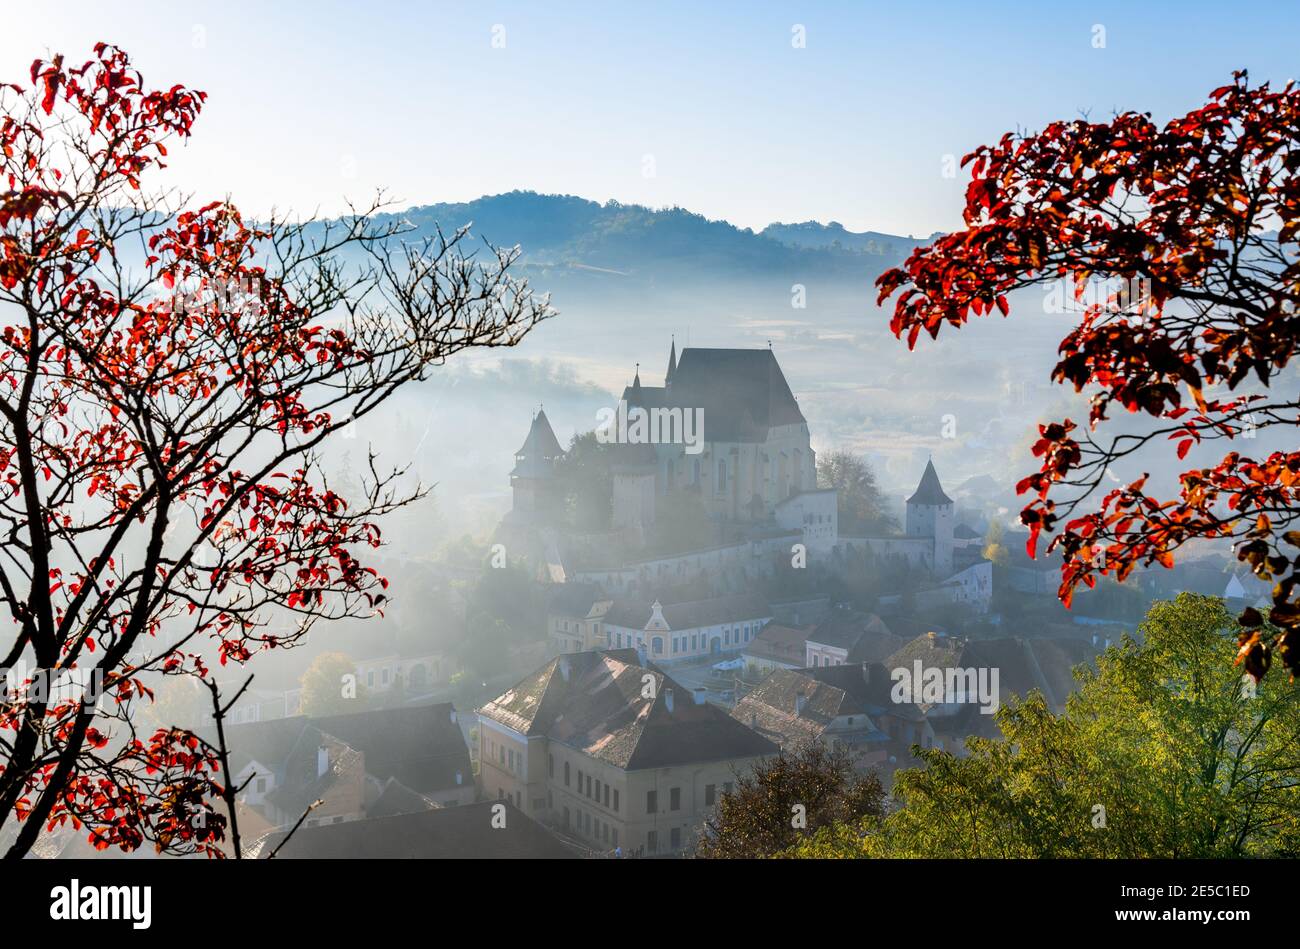 Biertan, Rumänien. Sächsische befestigte Kirche in Siebenbürgen, UNESCO-Erbe von Rumänien Reise Hintergrund in Osteuropa. Stockfoto